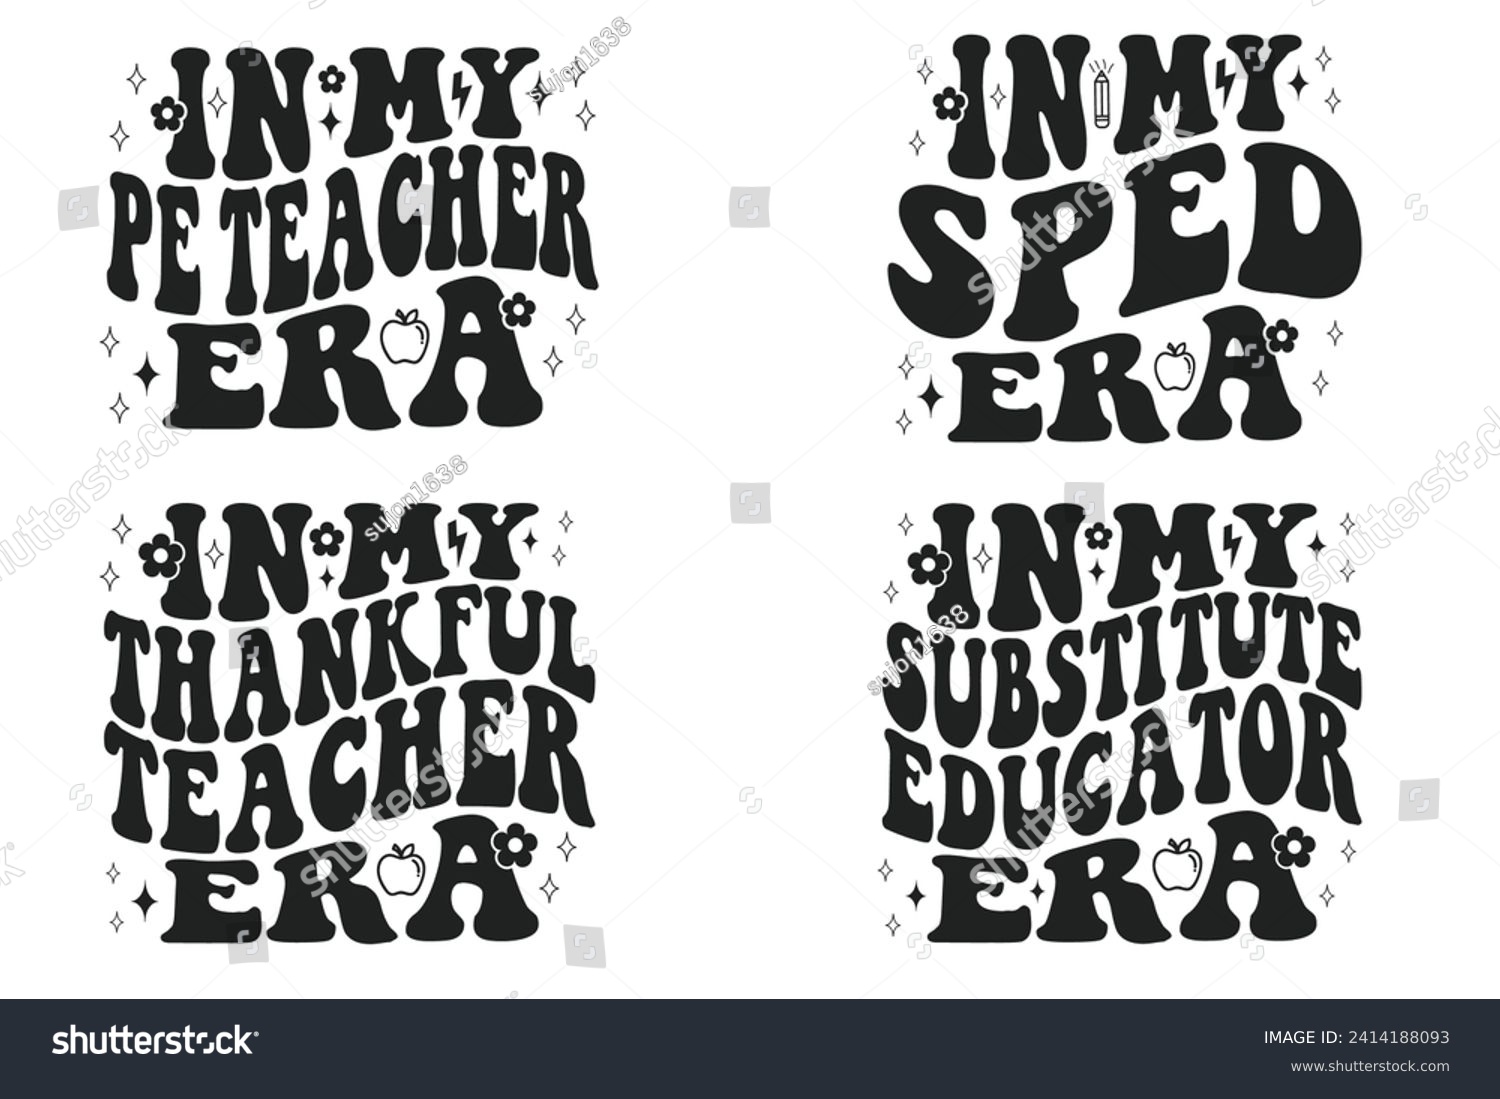 SVG of In My PE Teacher Era, In My SPED Era, In My Thankful Teacher Era, In My Substitute Educator Era retro T-shirt svg